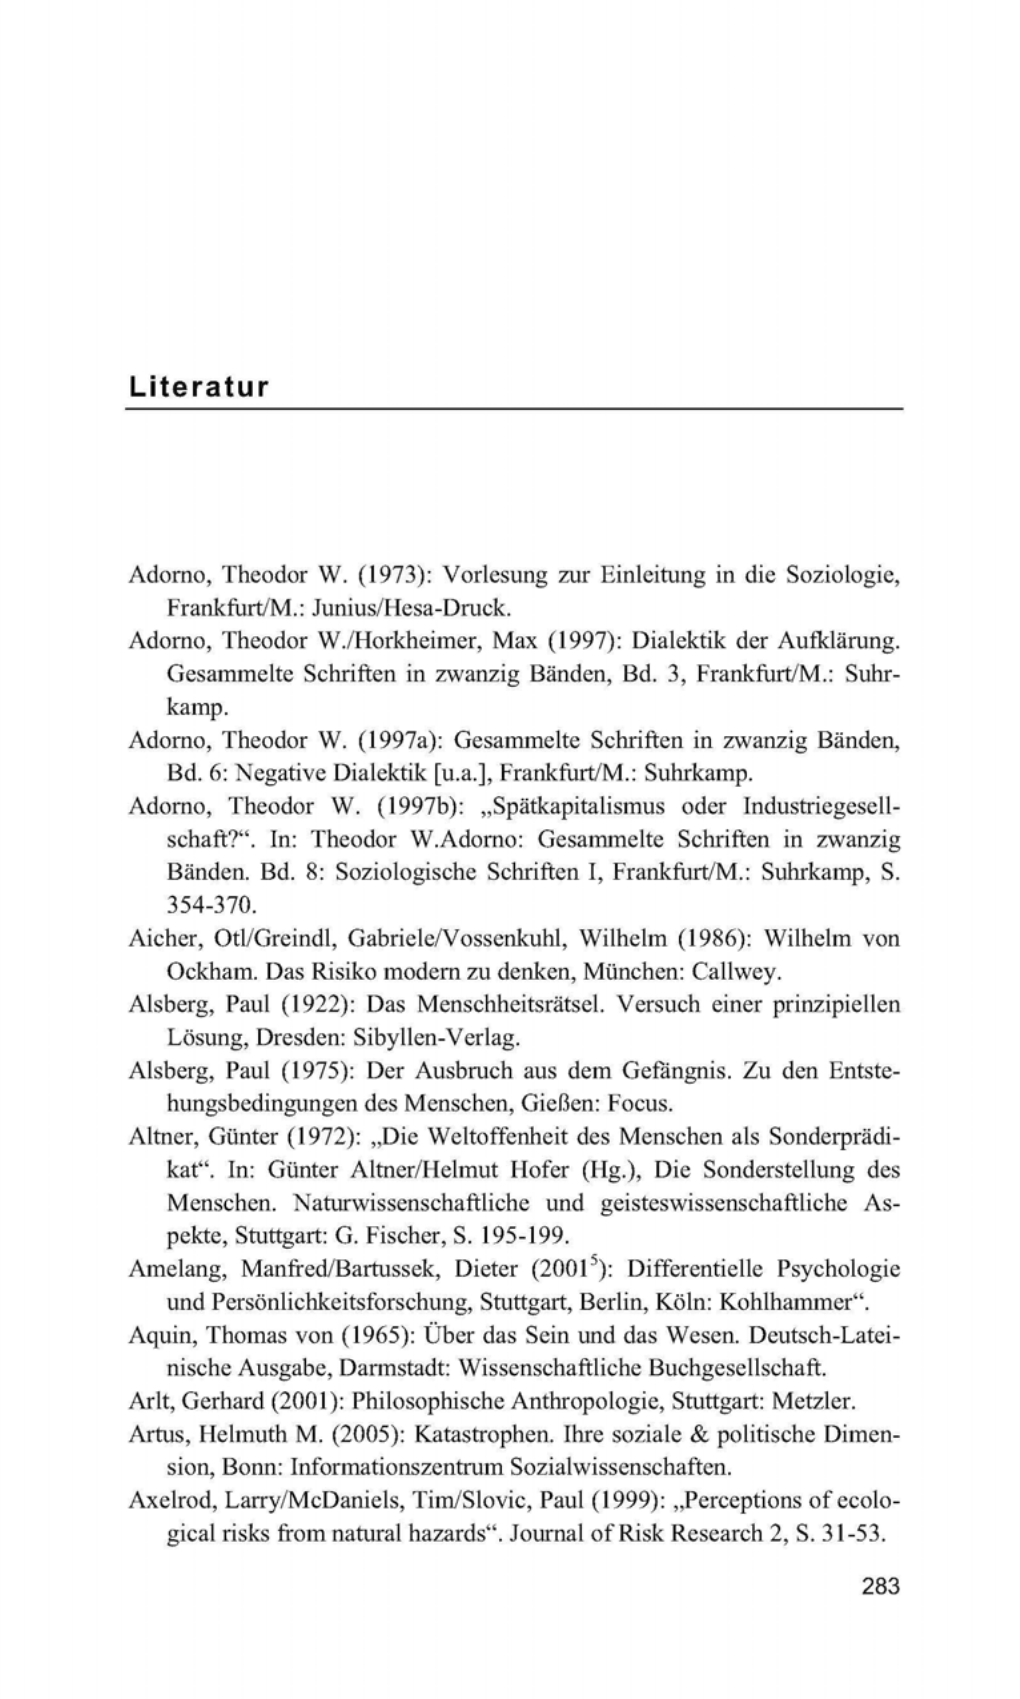 Adomo, Theodor W.(1973): Vorlesung Zur Einleitung in Die Soziologie